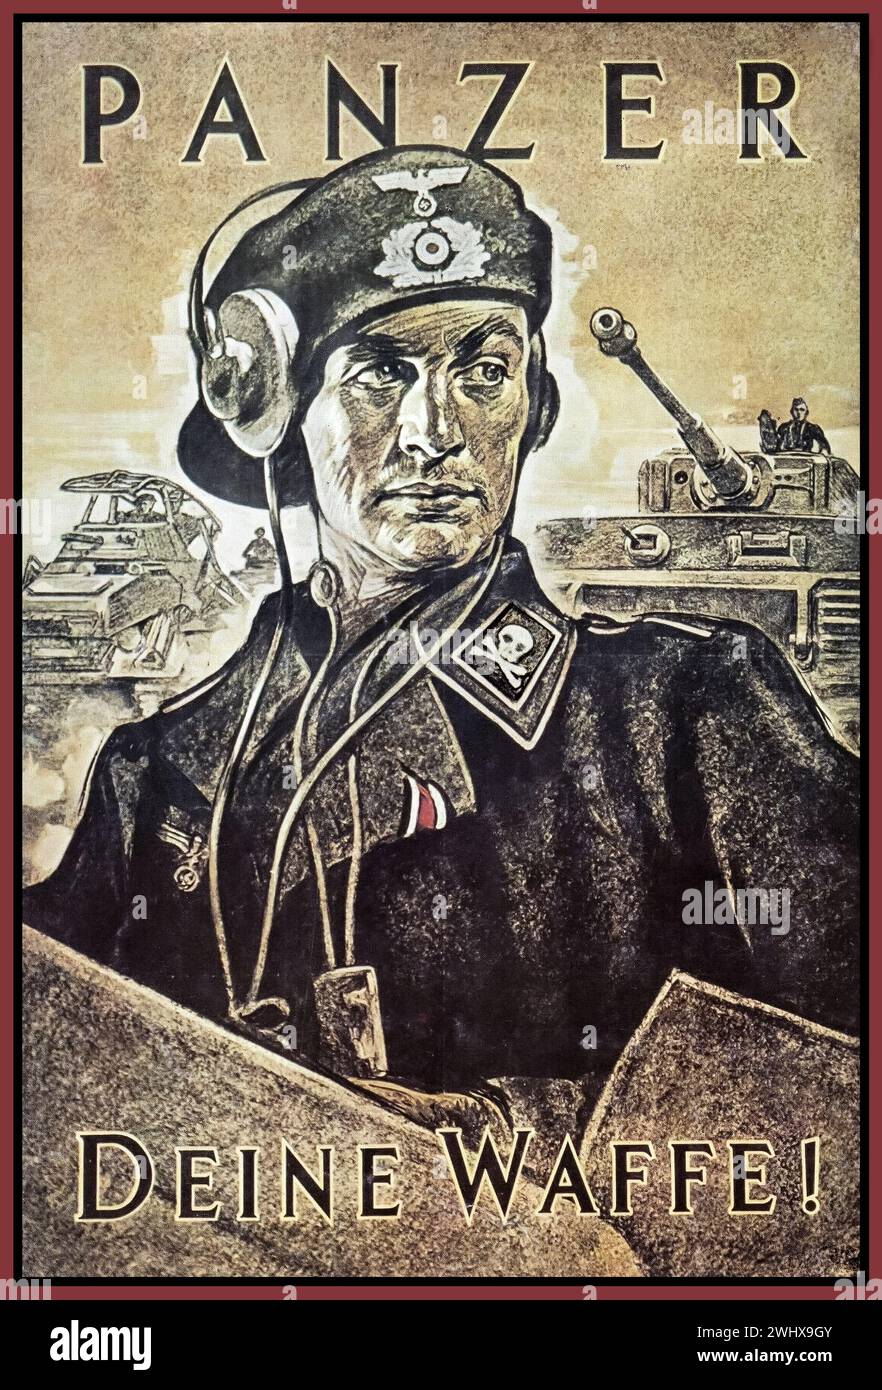 WW2 Waffen SS Panzer ' TOTENKOPF' affiche de propagande intitulée 'VOTRE ARME' avec commandant de char nazi avec SS crâne et Crossbones sur son uniforme de l'Allemagne nazie des années 1940 Banque D'Images